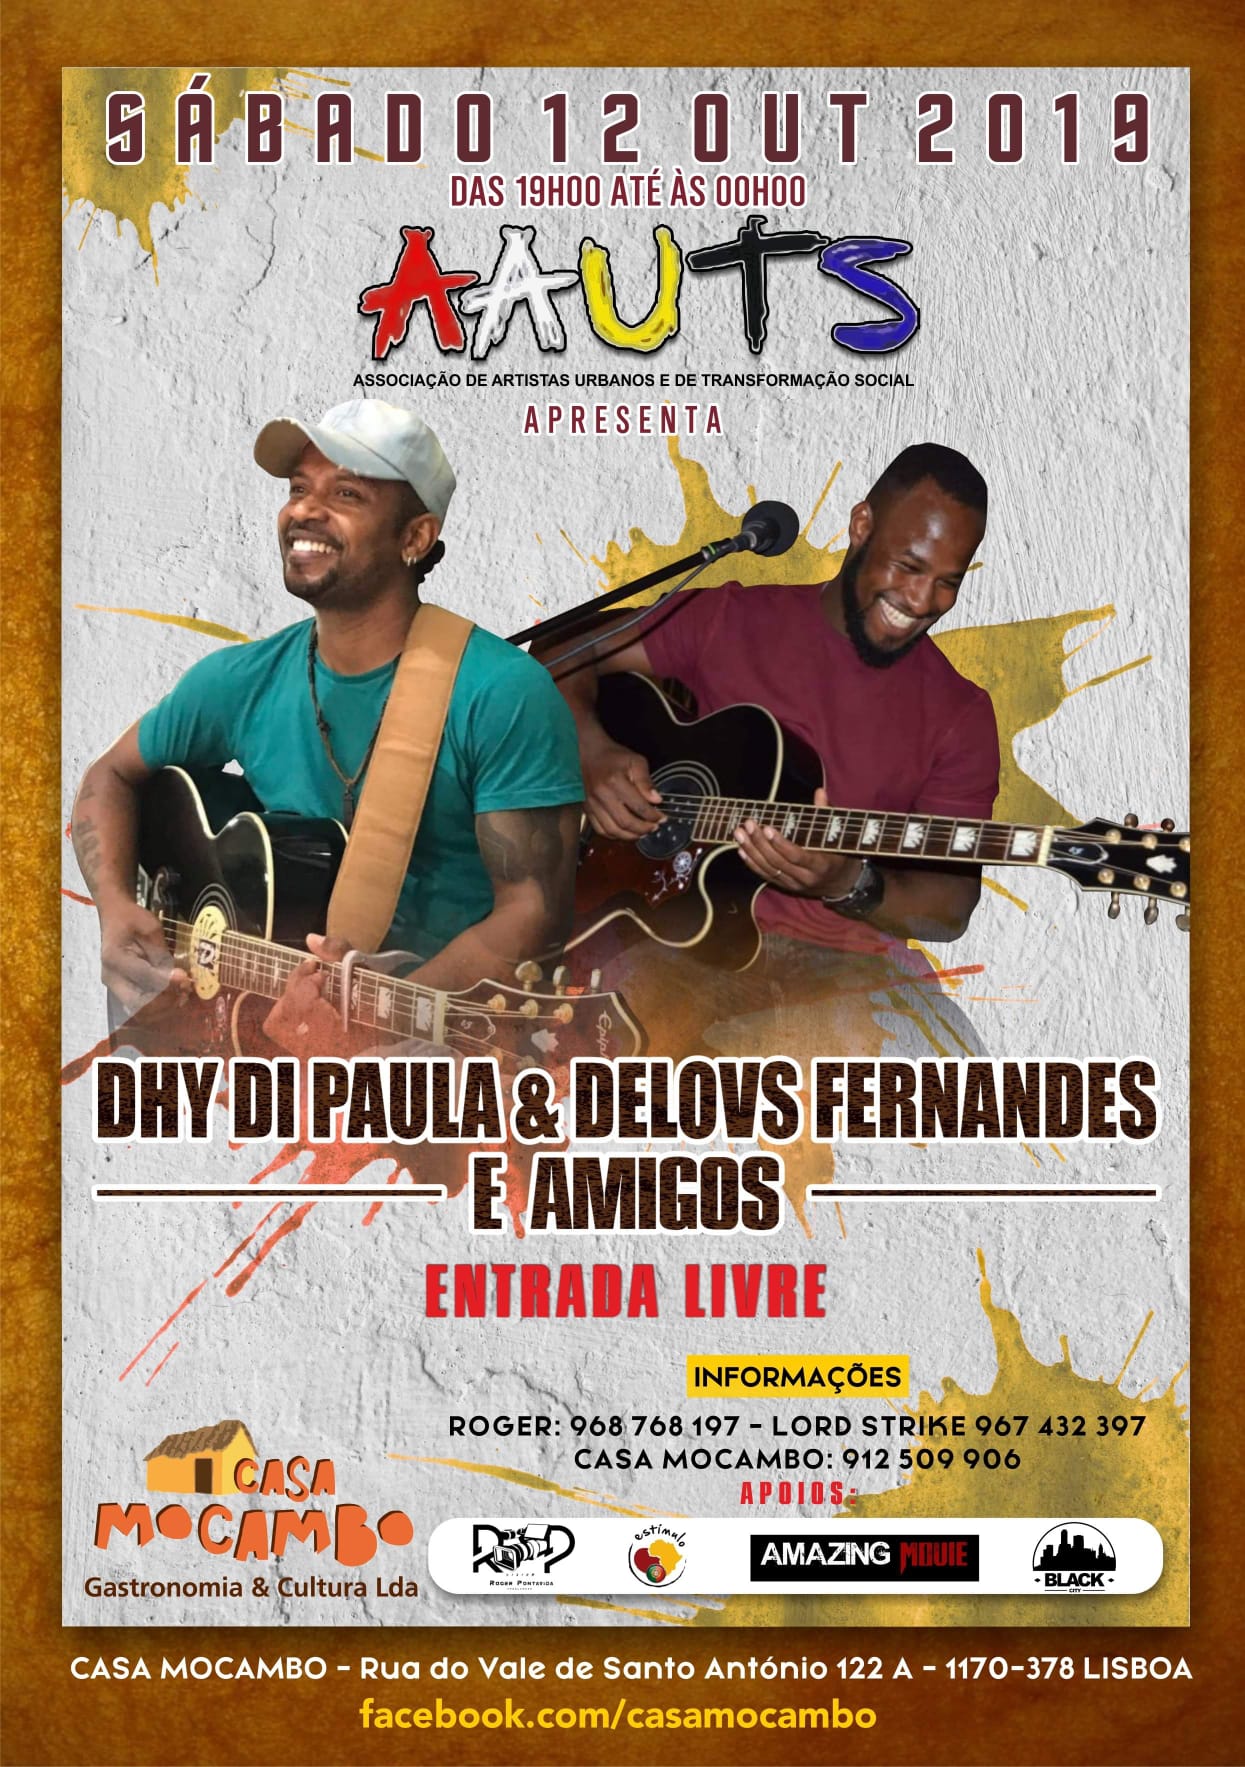 Sábado a AAUTS apresenta Dhy di Paula e Delovs Fernandes